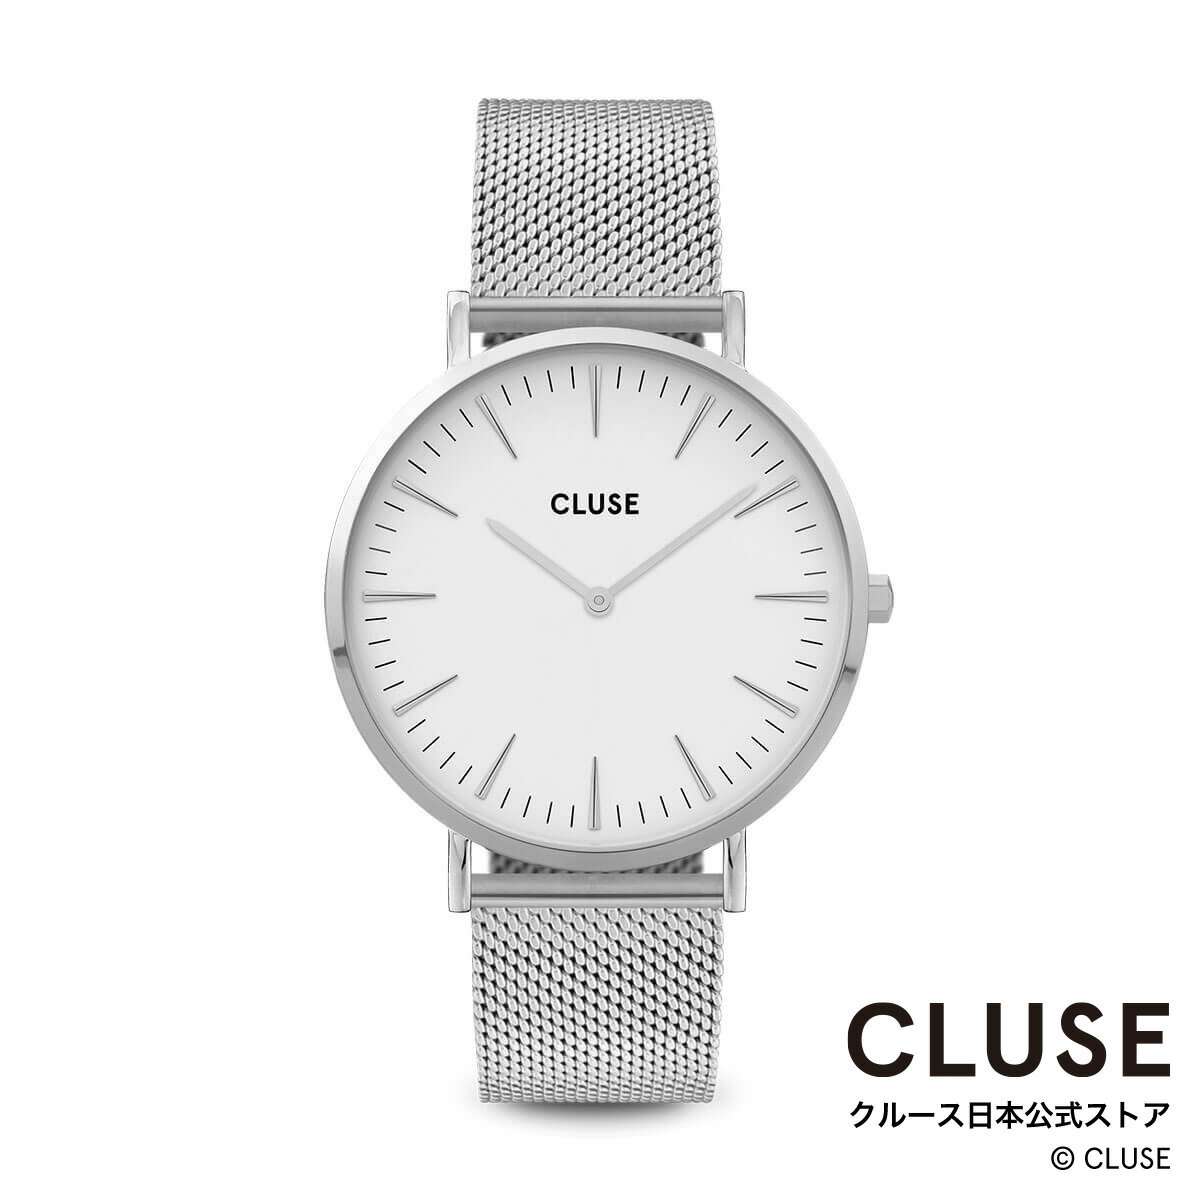 クルース ビジネス腕時計 レディース クルース CLUSE 日本公式ストア ボーホーシックメッシュ シルバー ホワイト シルバー レディース 女性 腕時計 時計 防水 クォーツ